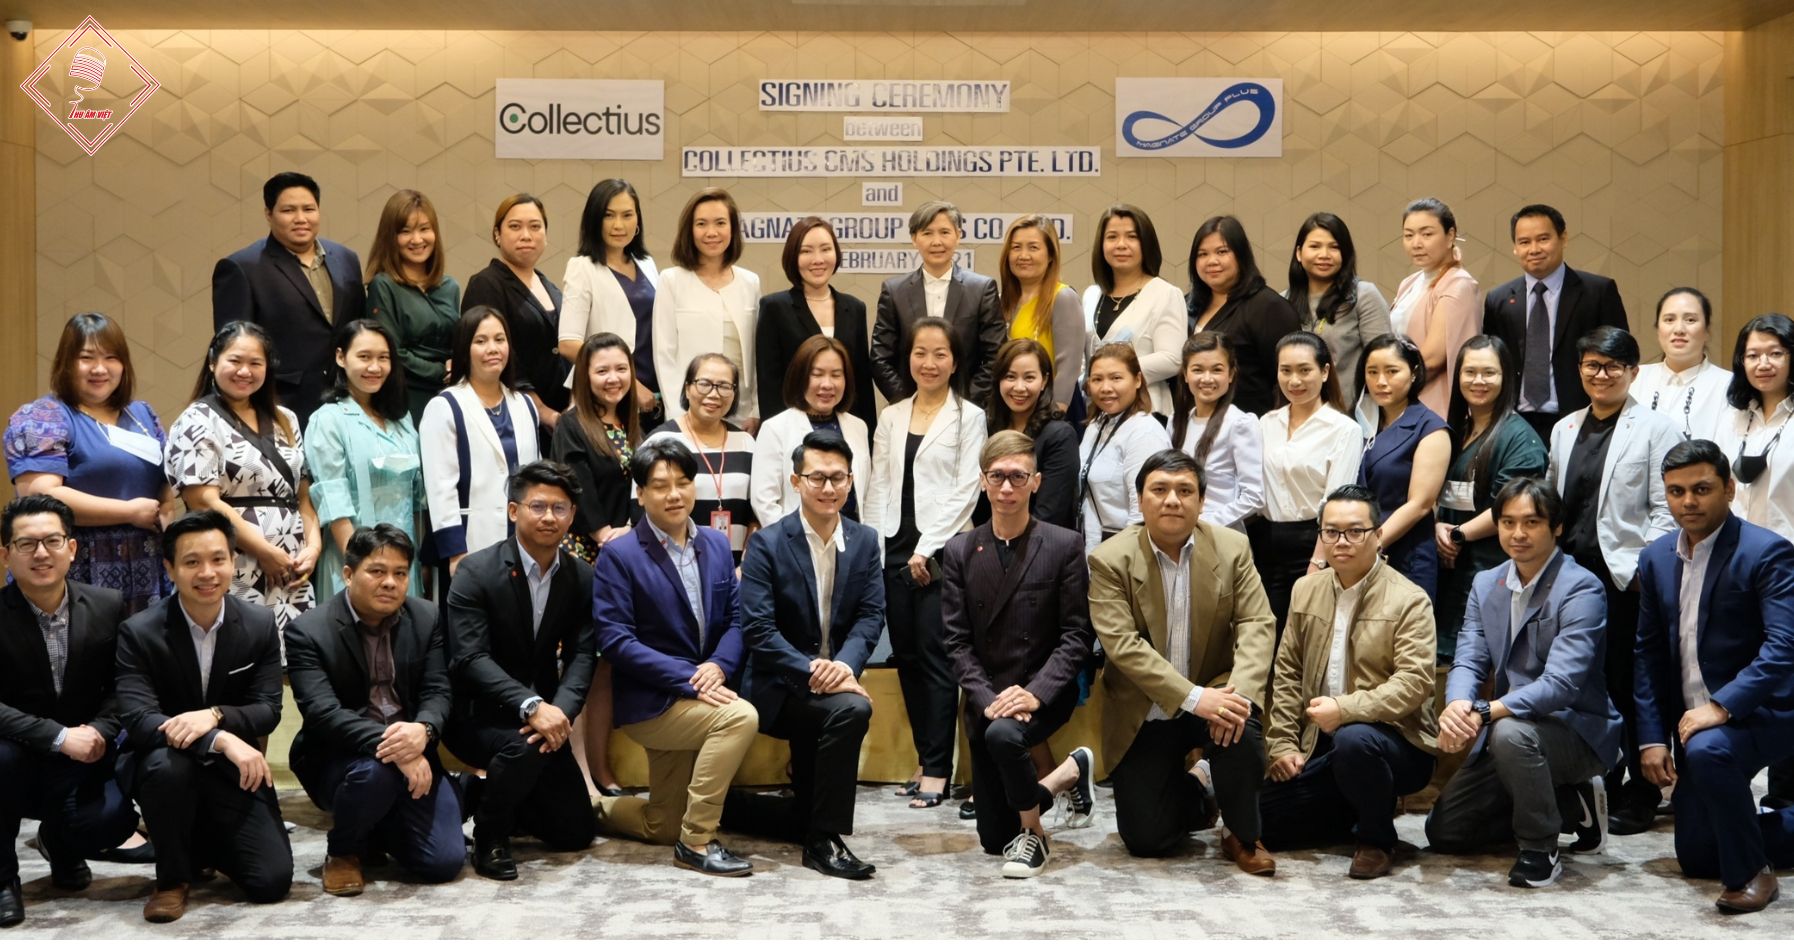 Collectius mua lại một công ty phục vụ nợ hàng đầu tại Thái Lan